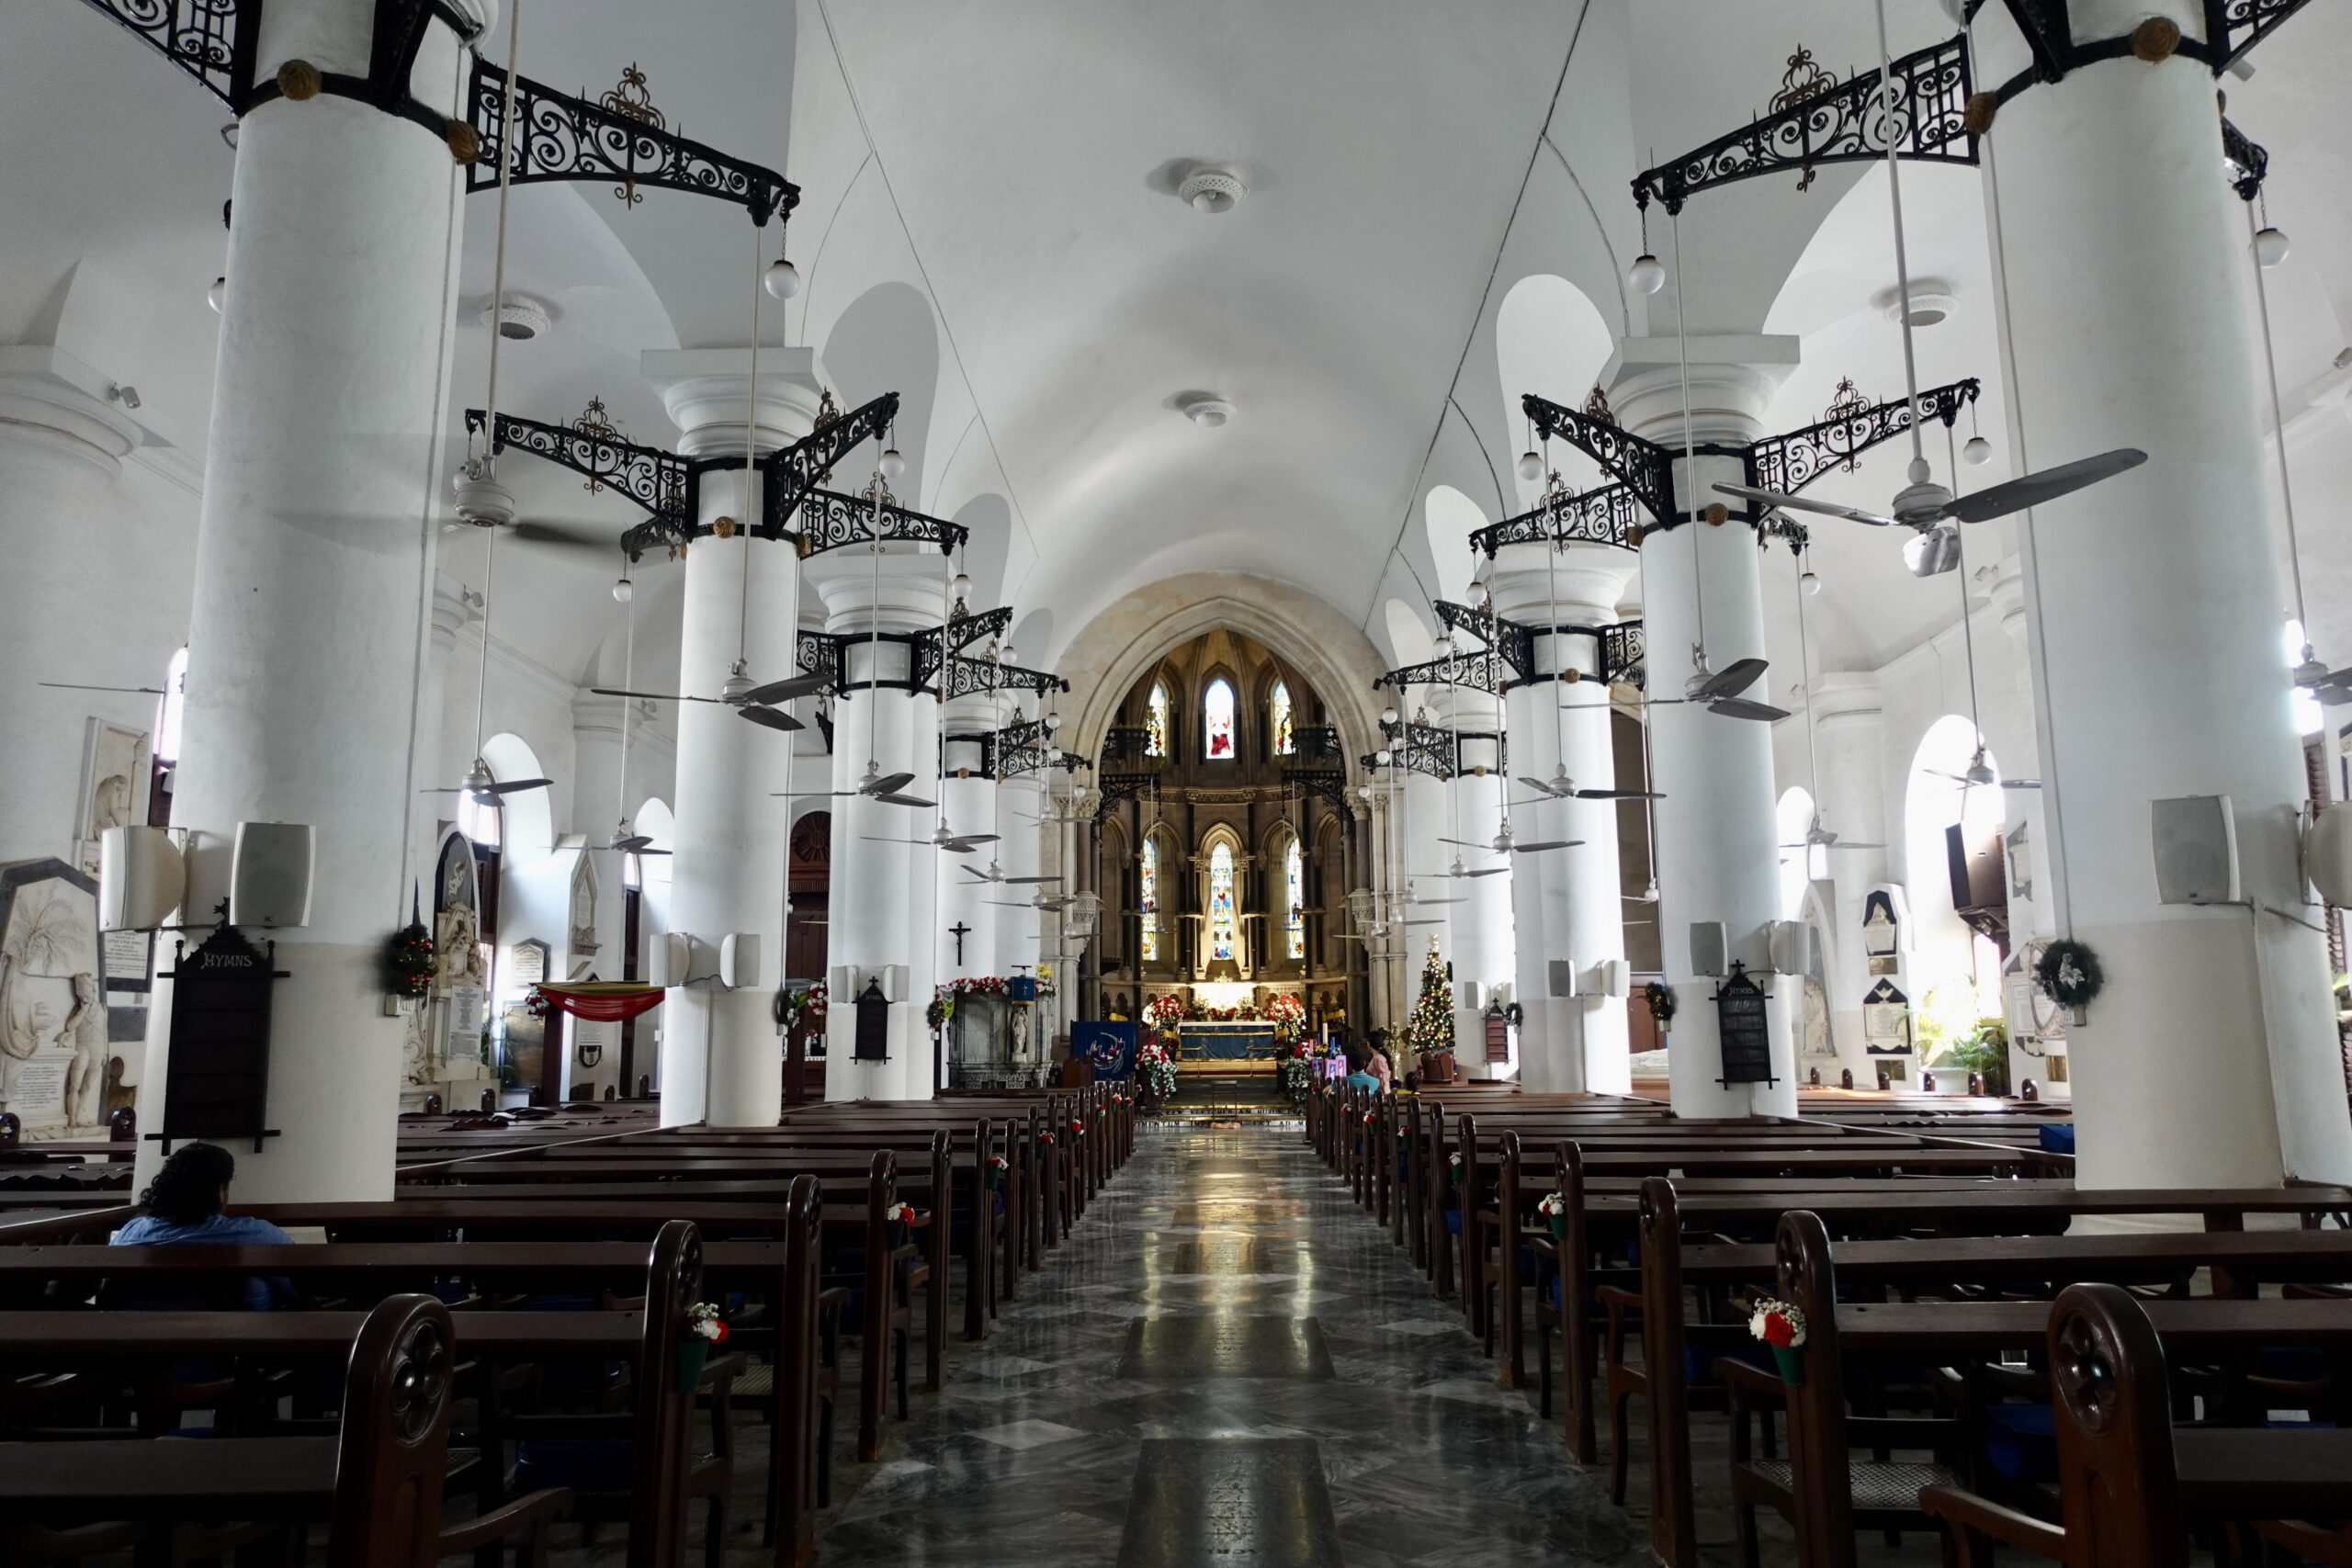 Die 300 Jahre alte St. Thomas Cathedral war die erste anglikanische Kirche in Mumbai (Bombay) und wurde 1718 eingeweiht.